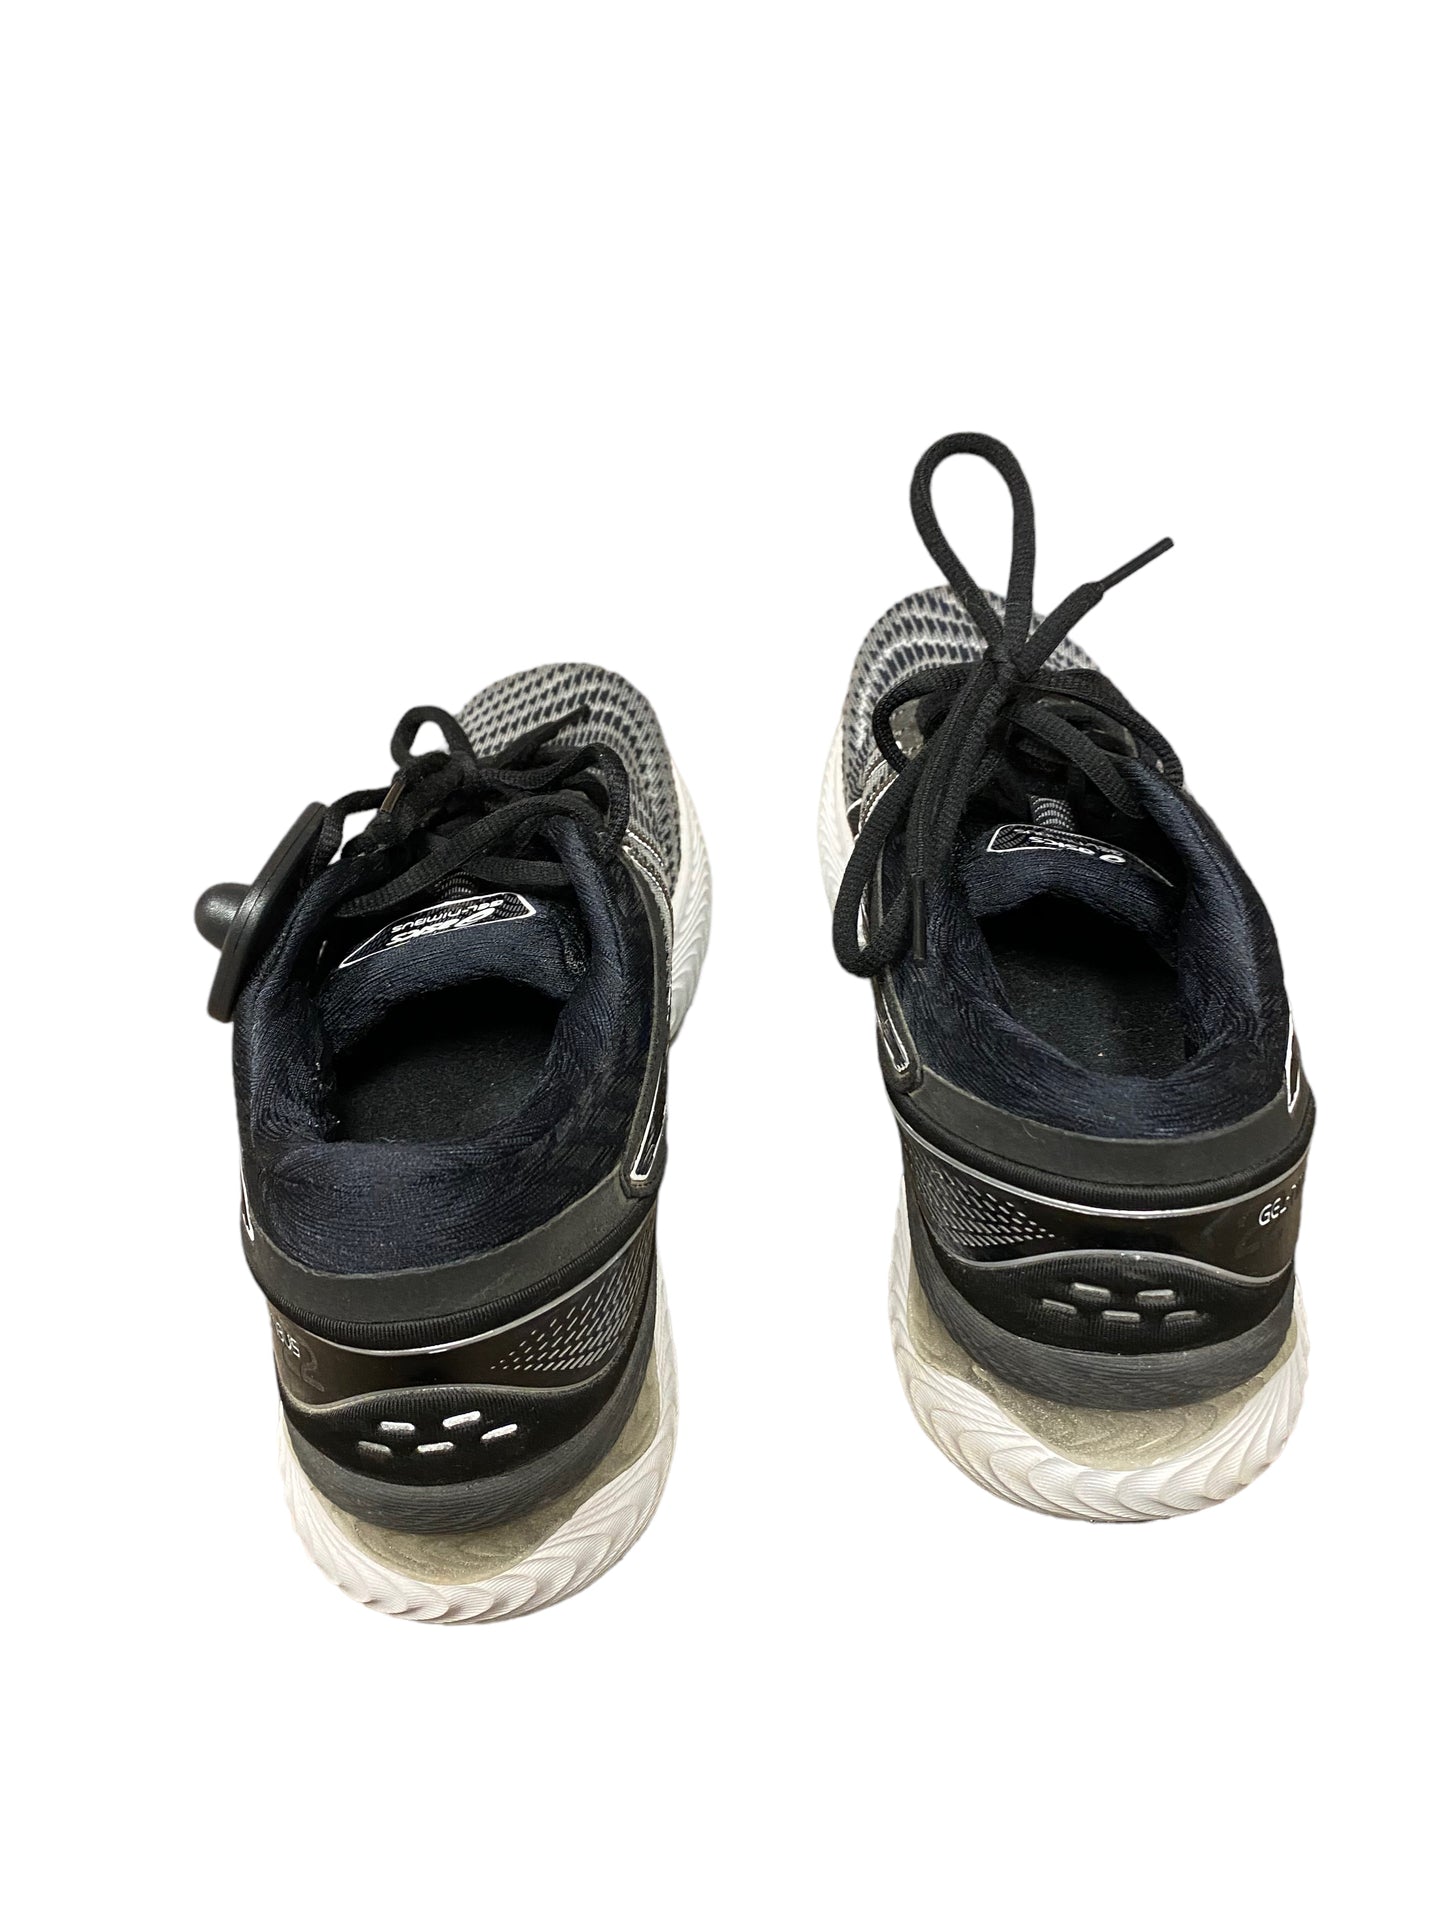 Grey Shoes Athletic Asics, Size 8.5